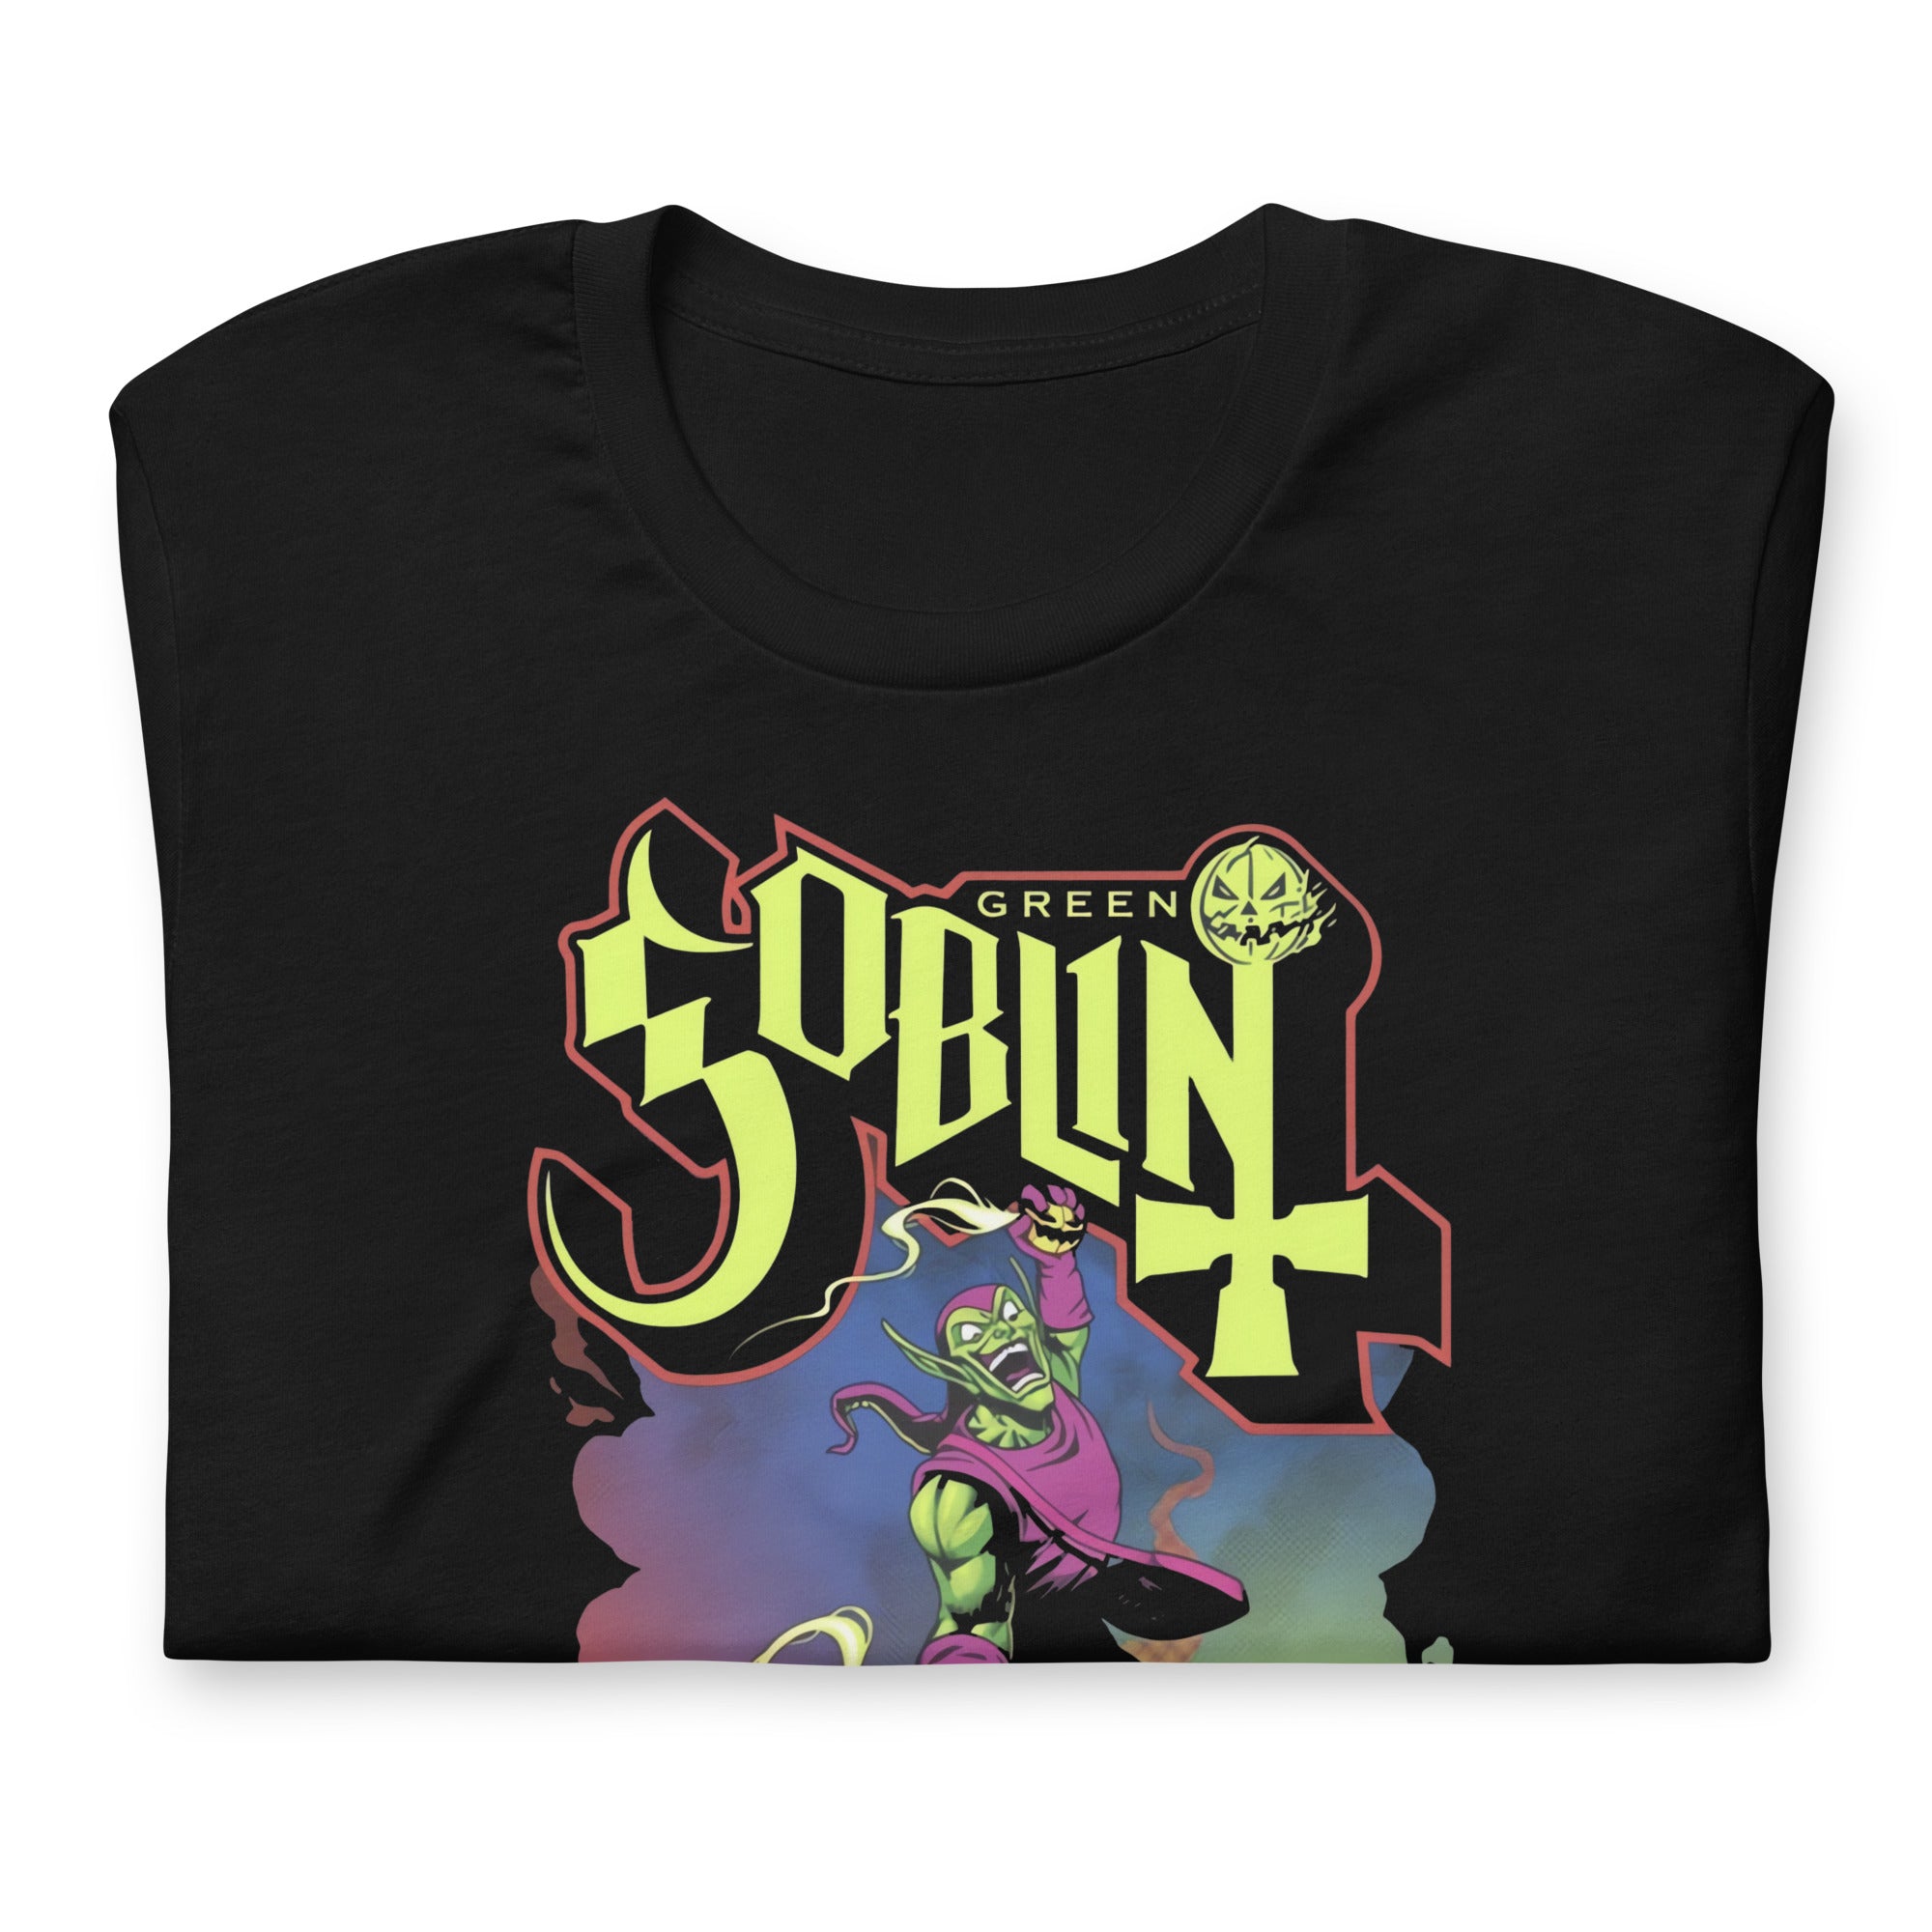 ¡Compra el mejor merchandising en Superstar! Encuentra diseños únicos y de alta calidad, Playera de Goblin Ghost